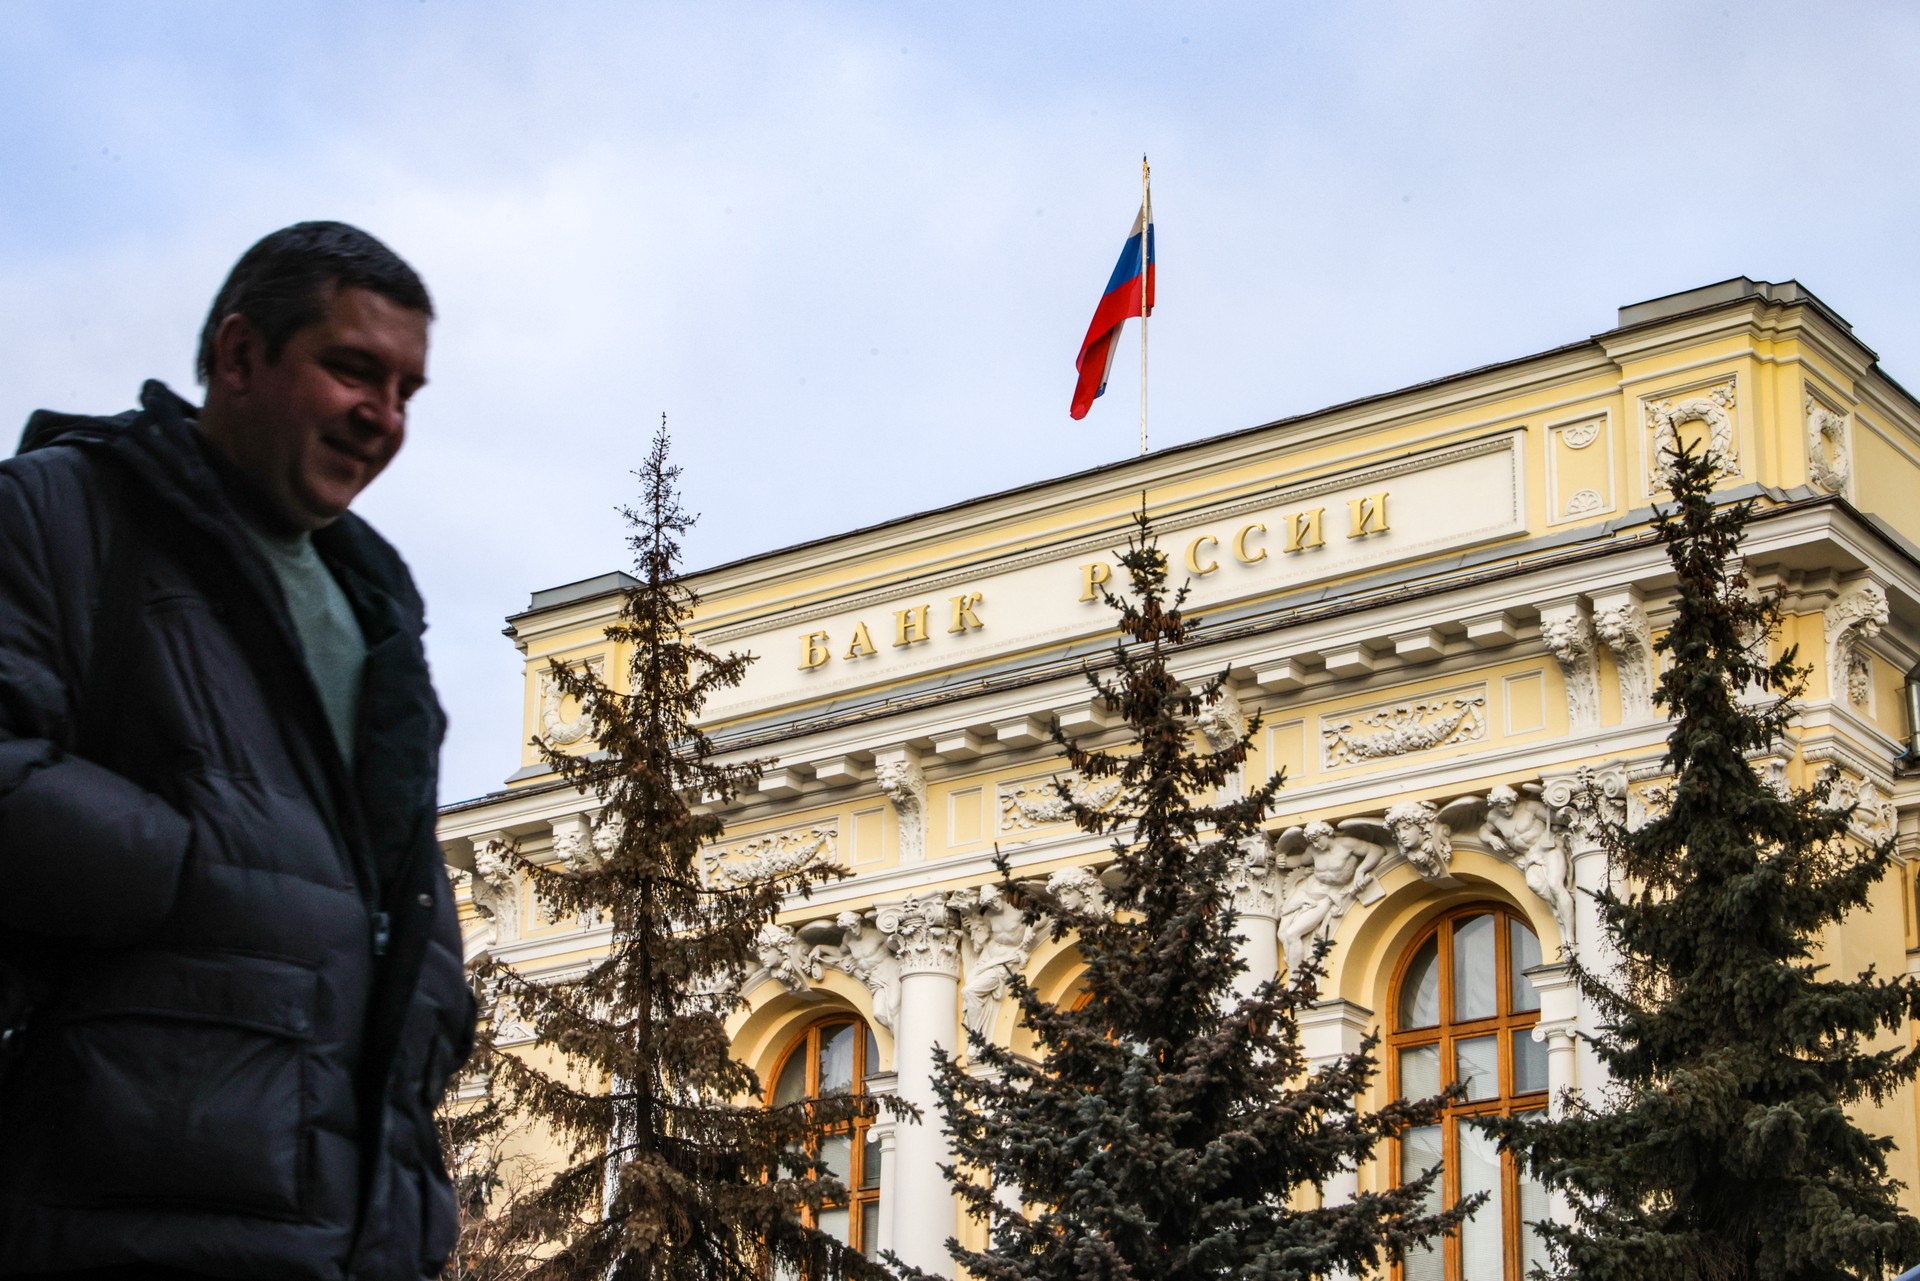 Спецоперация по спасению средств: как Банк России планомерно готовился к санкциям